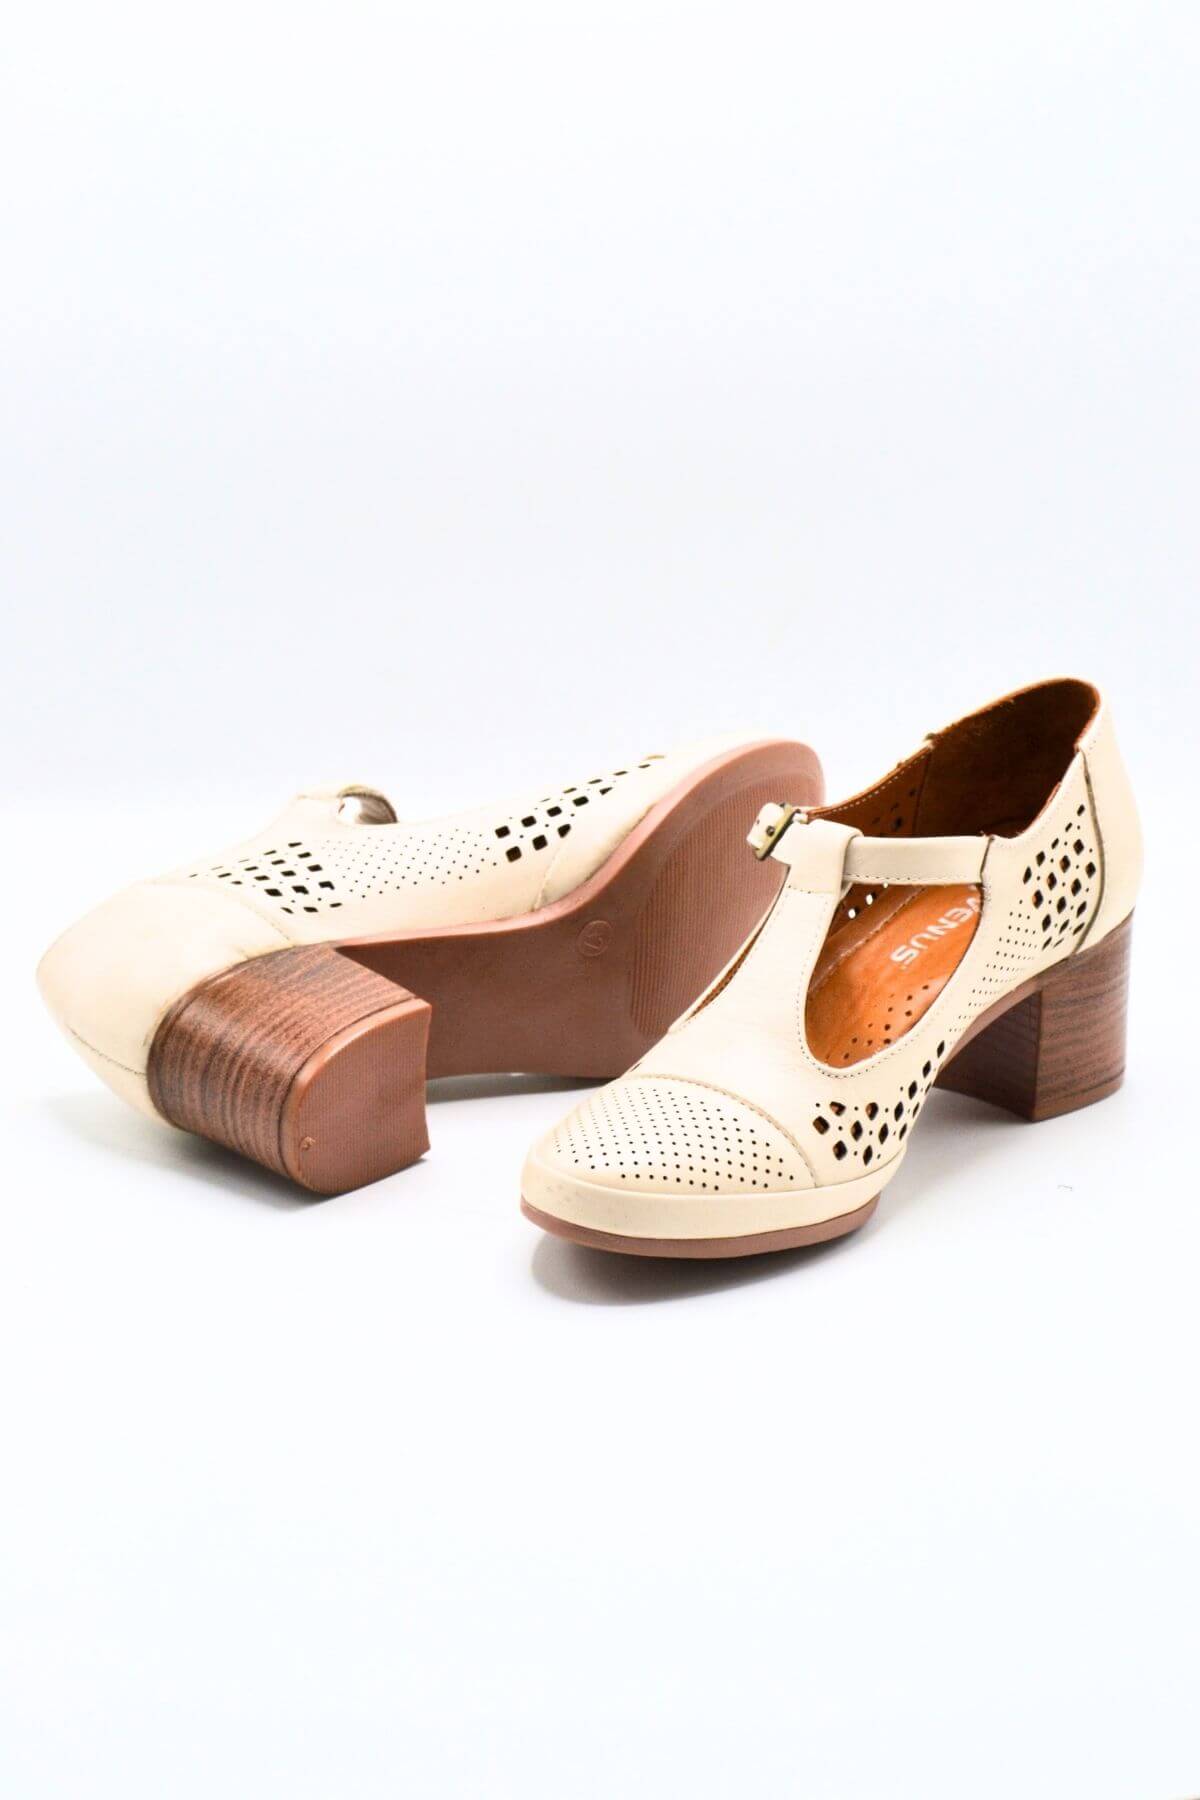 Kadın Yazlık Topuklu Deri Ayakkabı Bej 1911923Y - Thumbnail